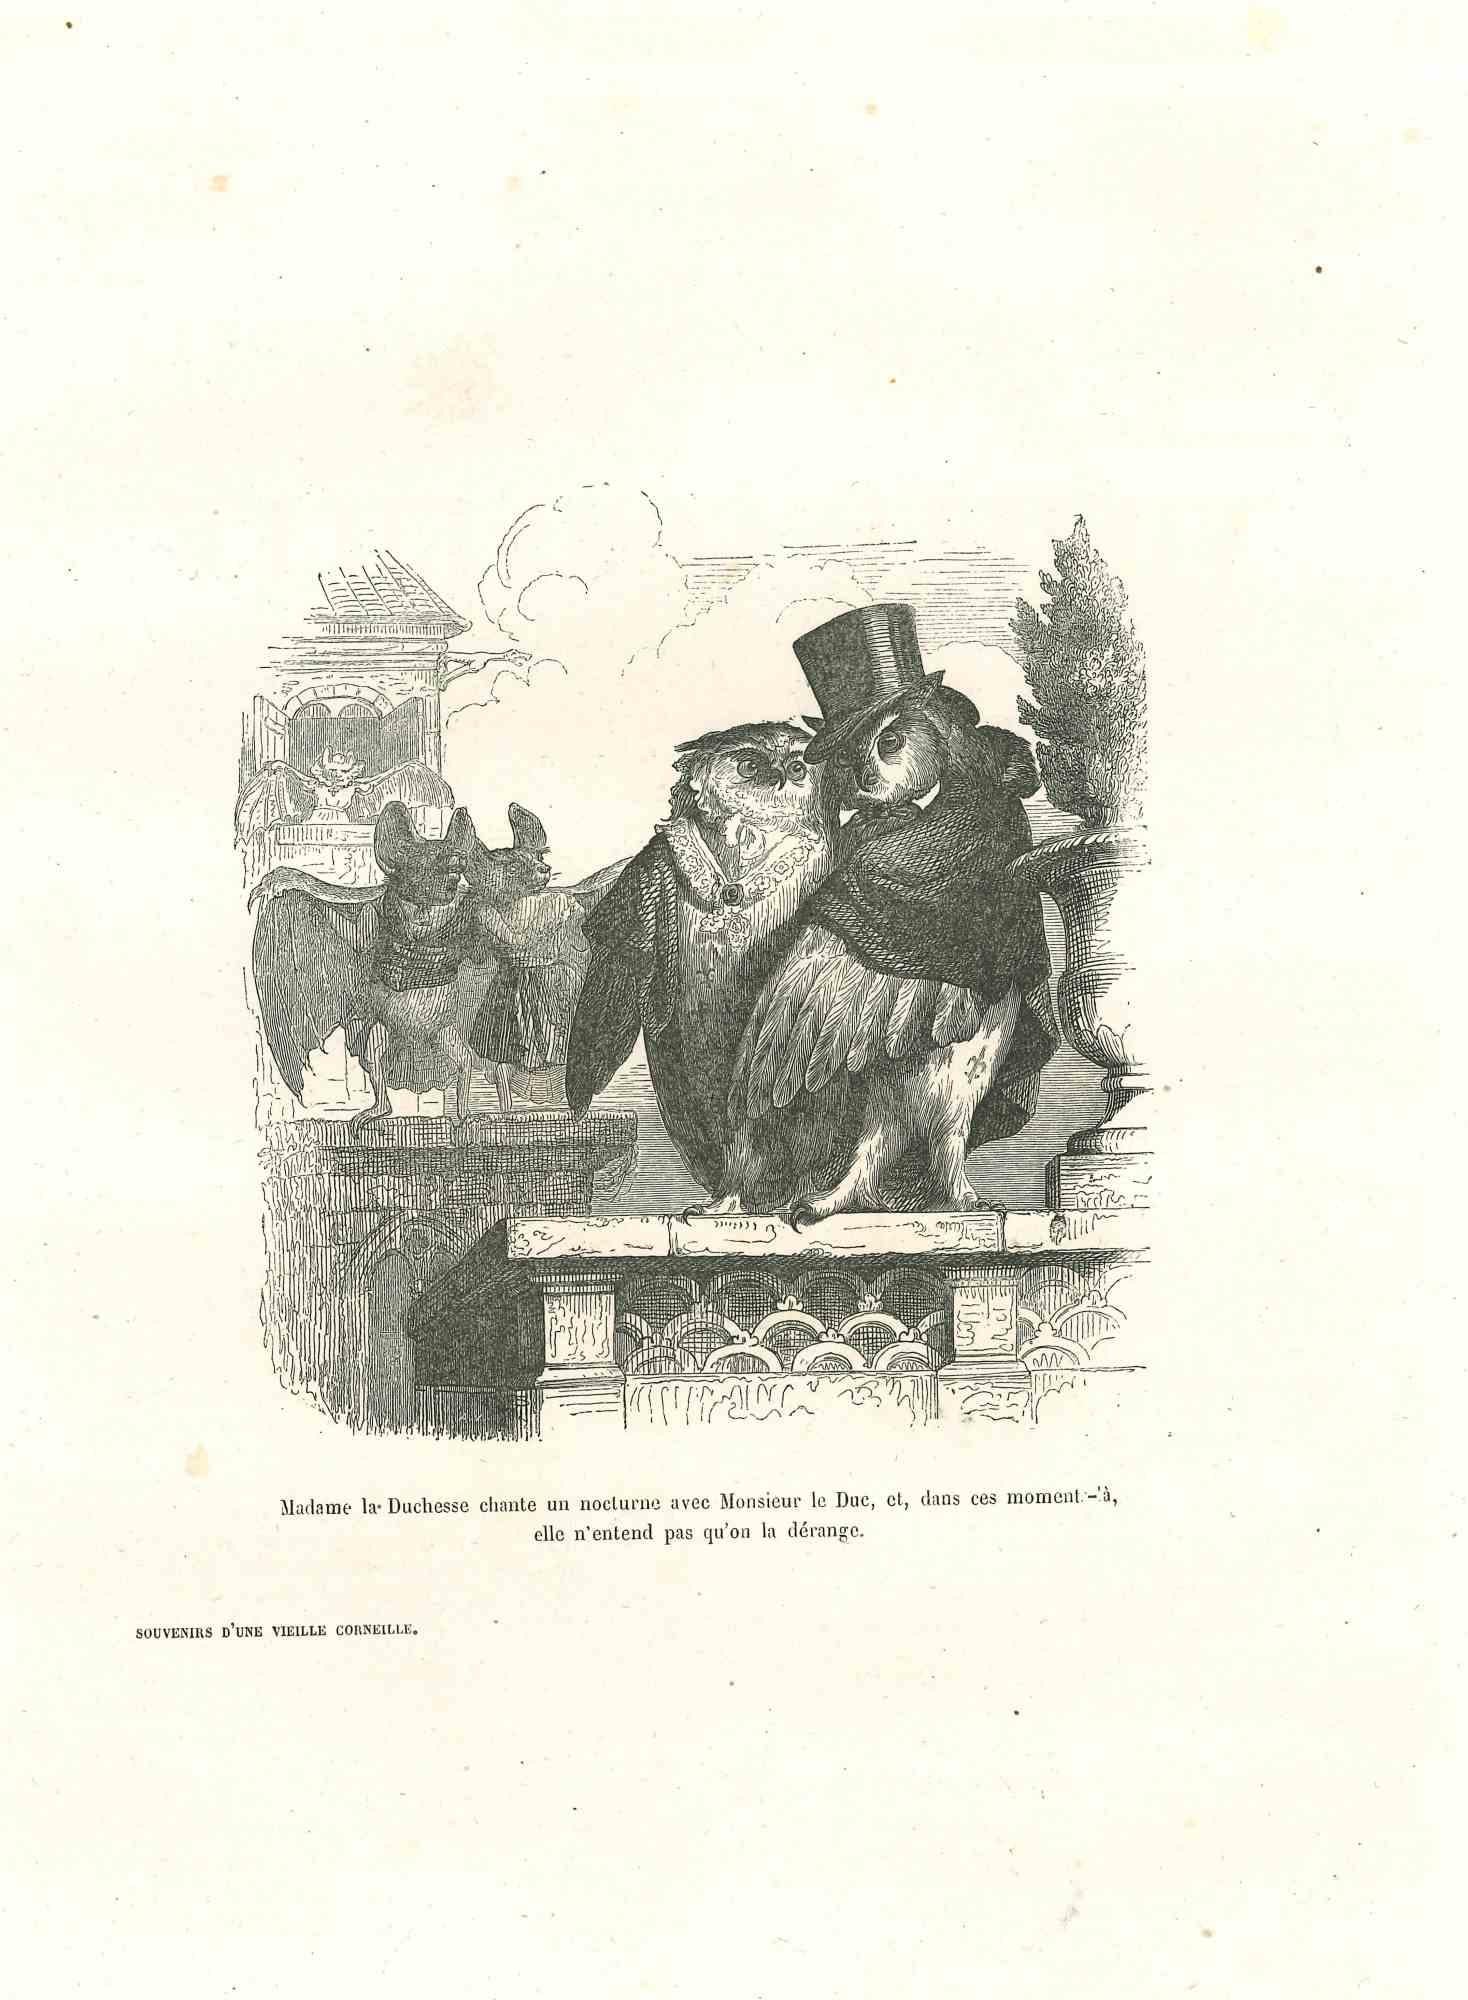 Animal Print Jean Jeacques Grandville - The Duchess Owl Sings For The Duke Owl (Le hibou chantant de la duchesse pour le duc) - Lithographie de J.J Grandville - 1852